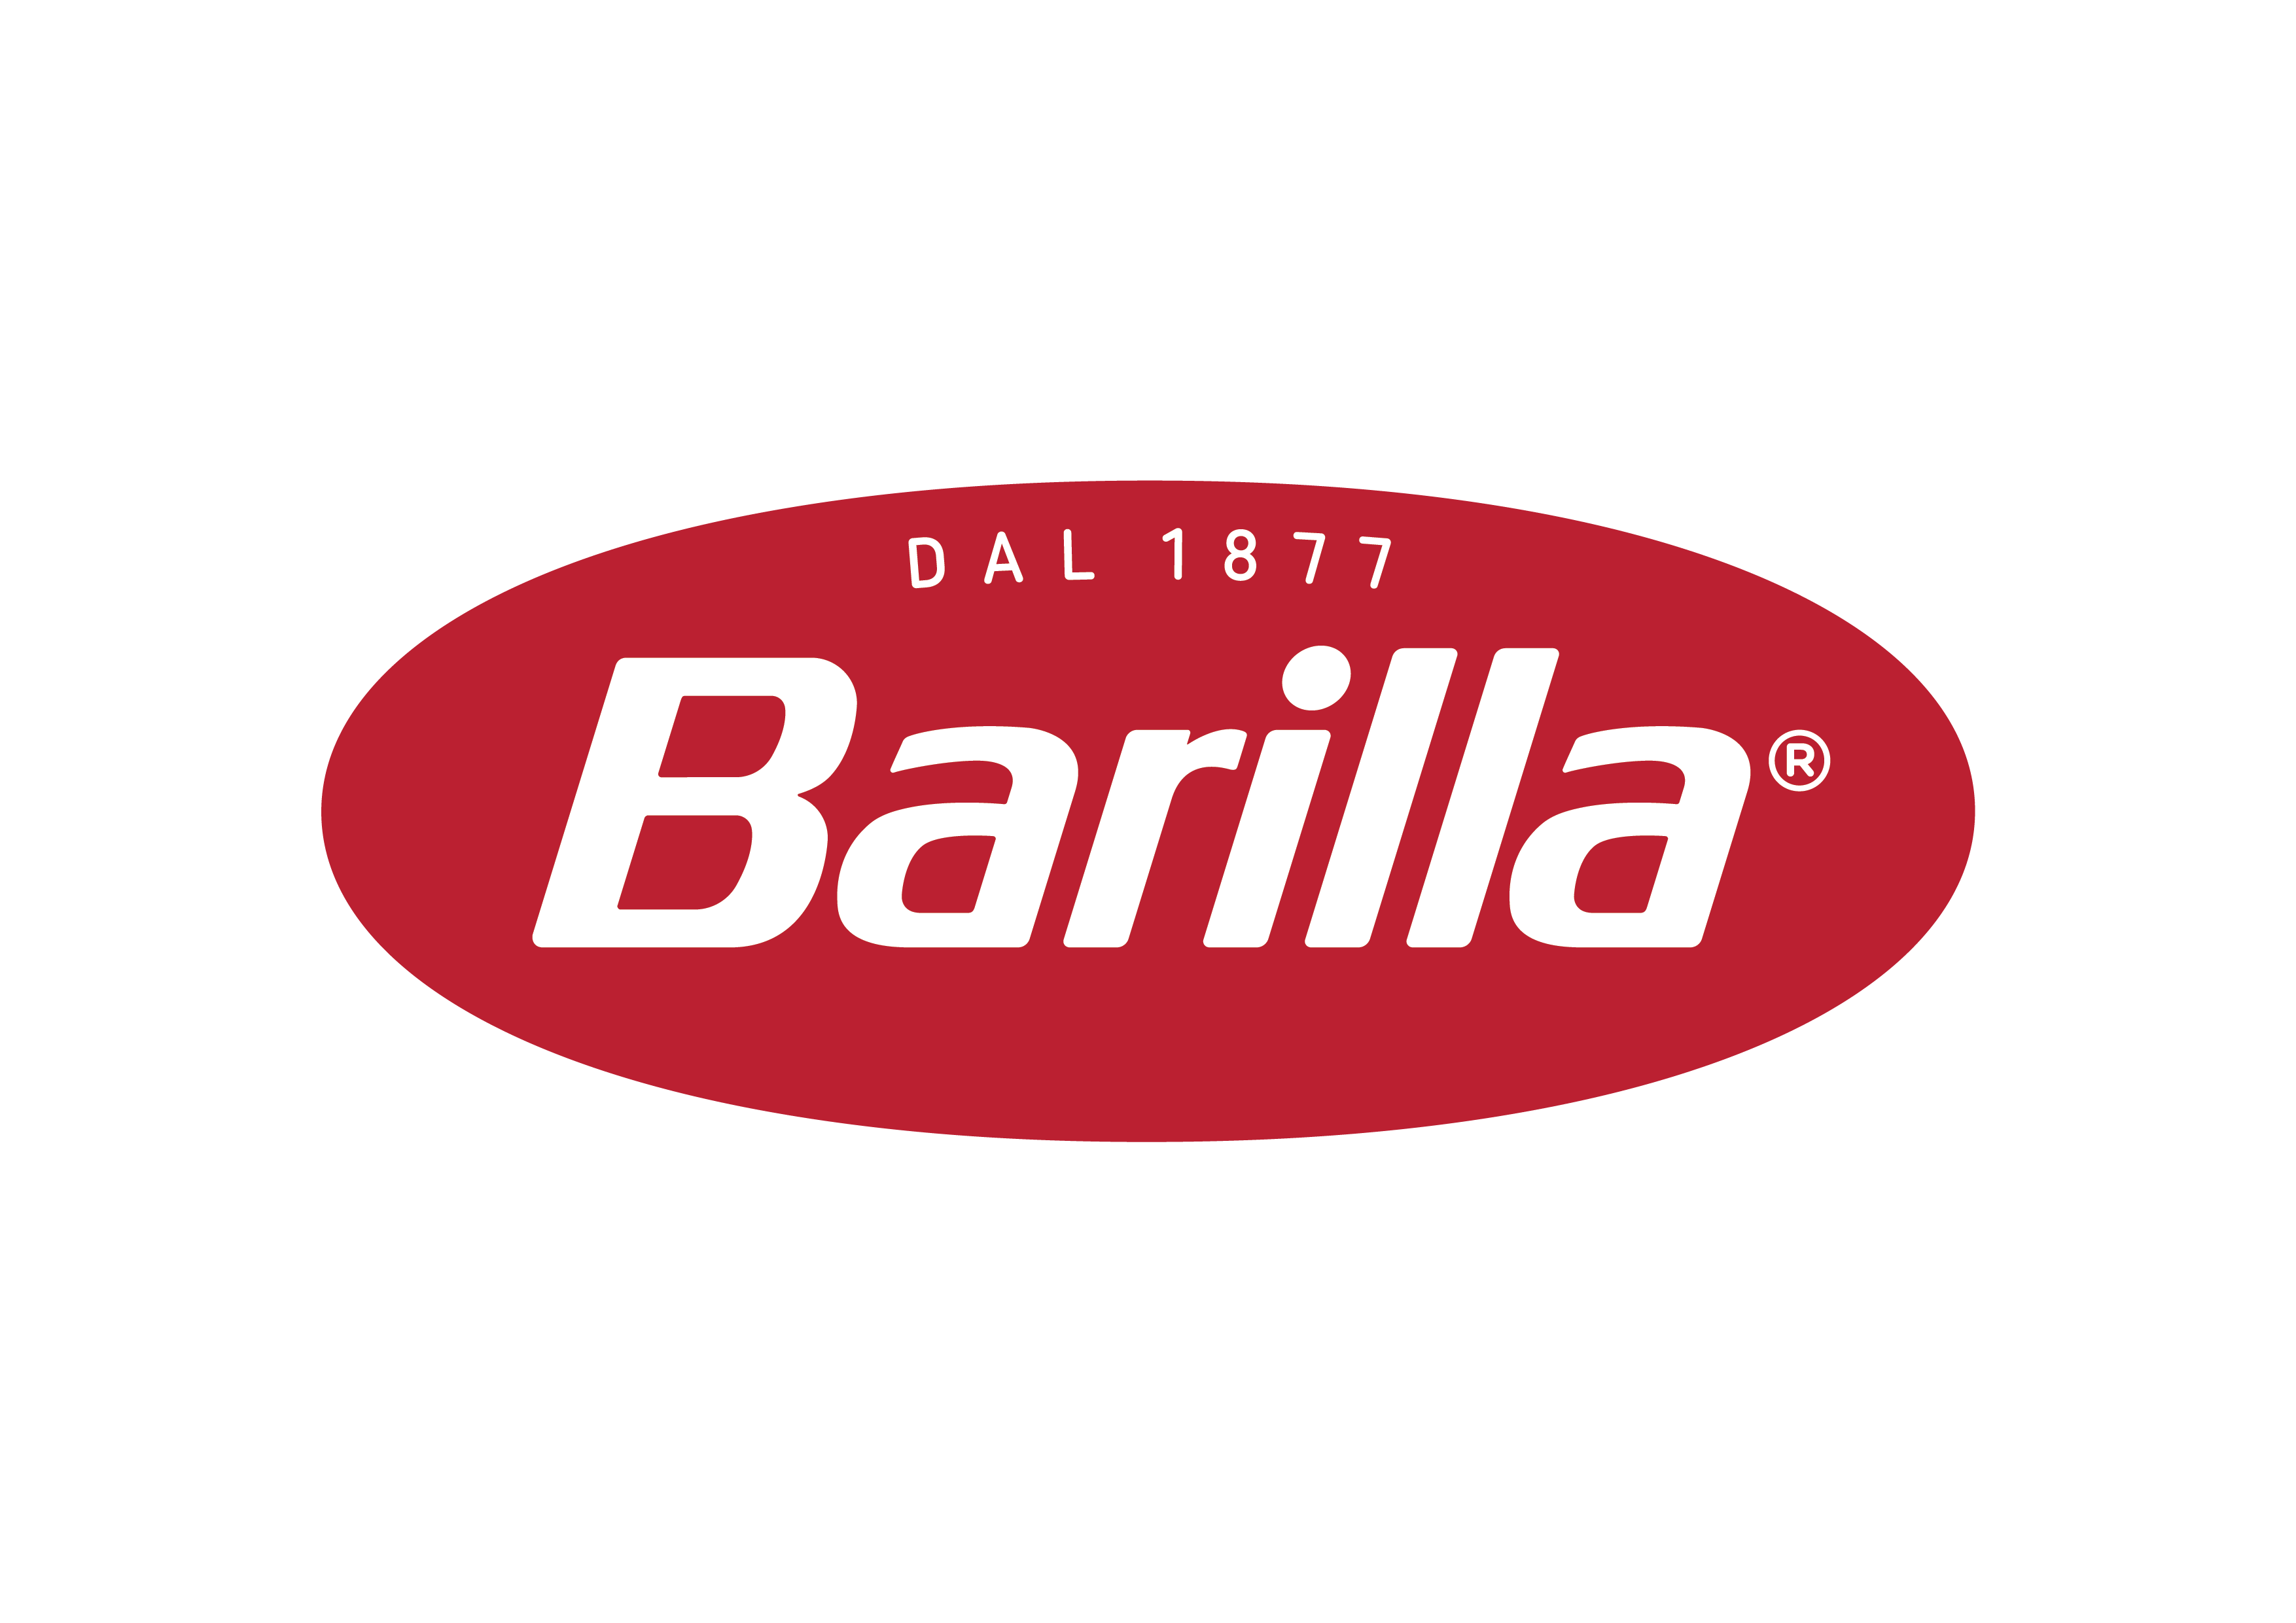 Makarony Barilla - produkty włoskie w ofercie Croco Group